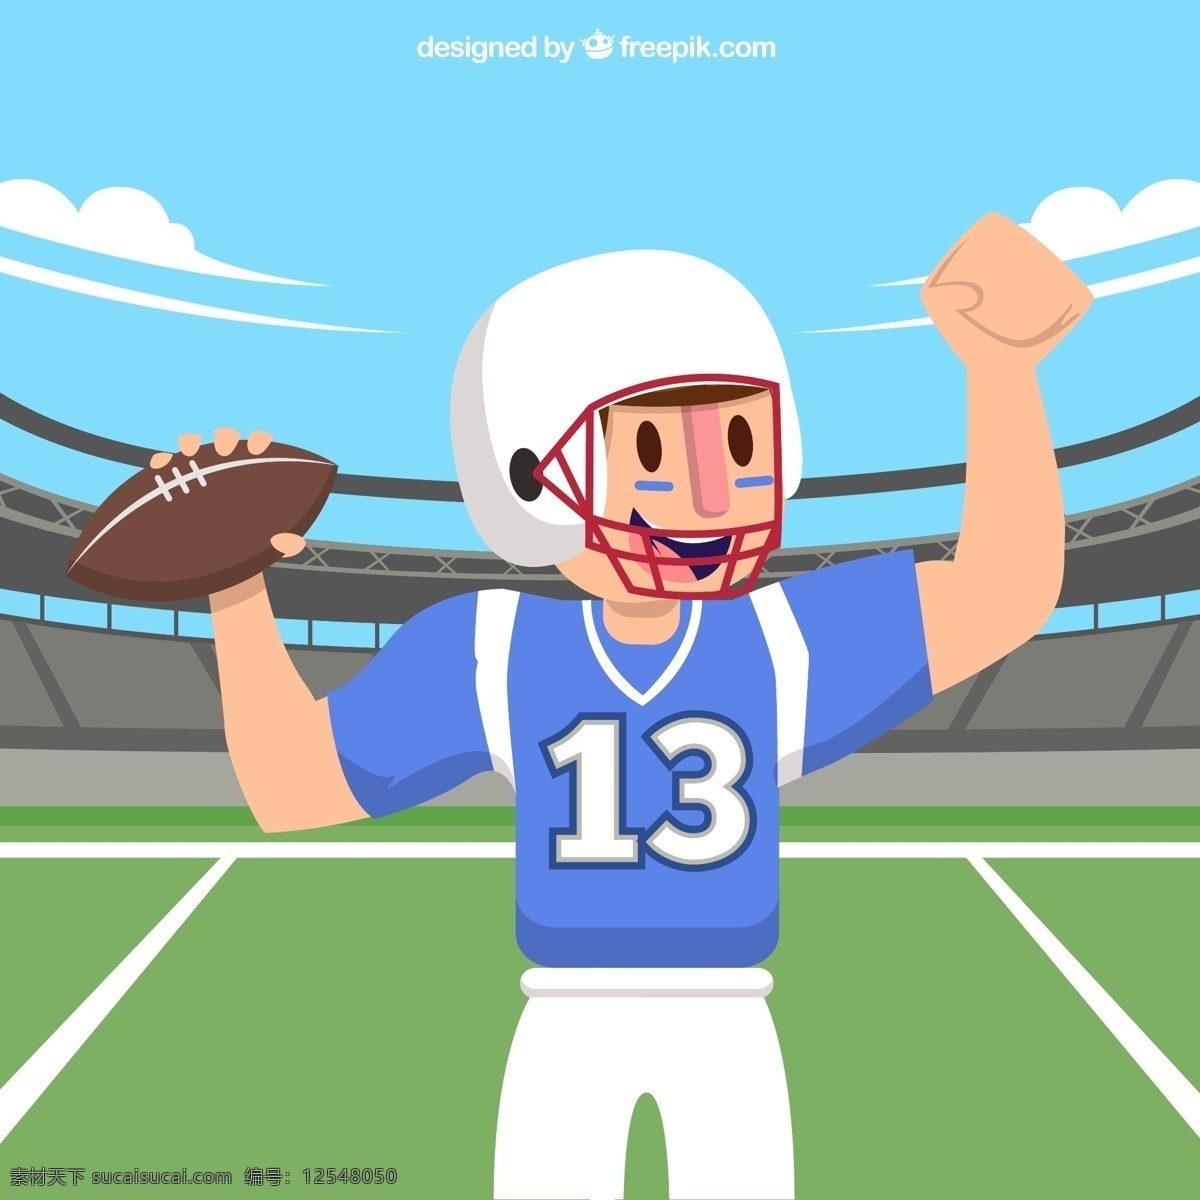 创意 美式 橄榄球 球手 云朵 运动 运动场 球场 美式橄榄球 动漫动画 动漫人物